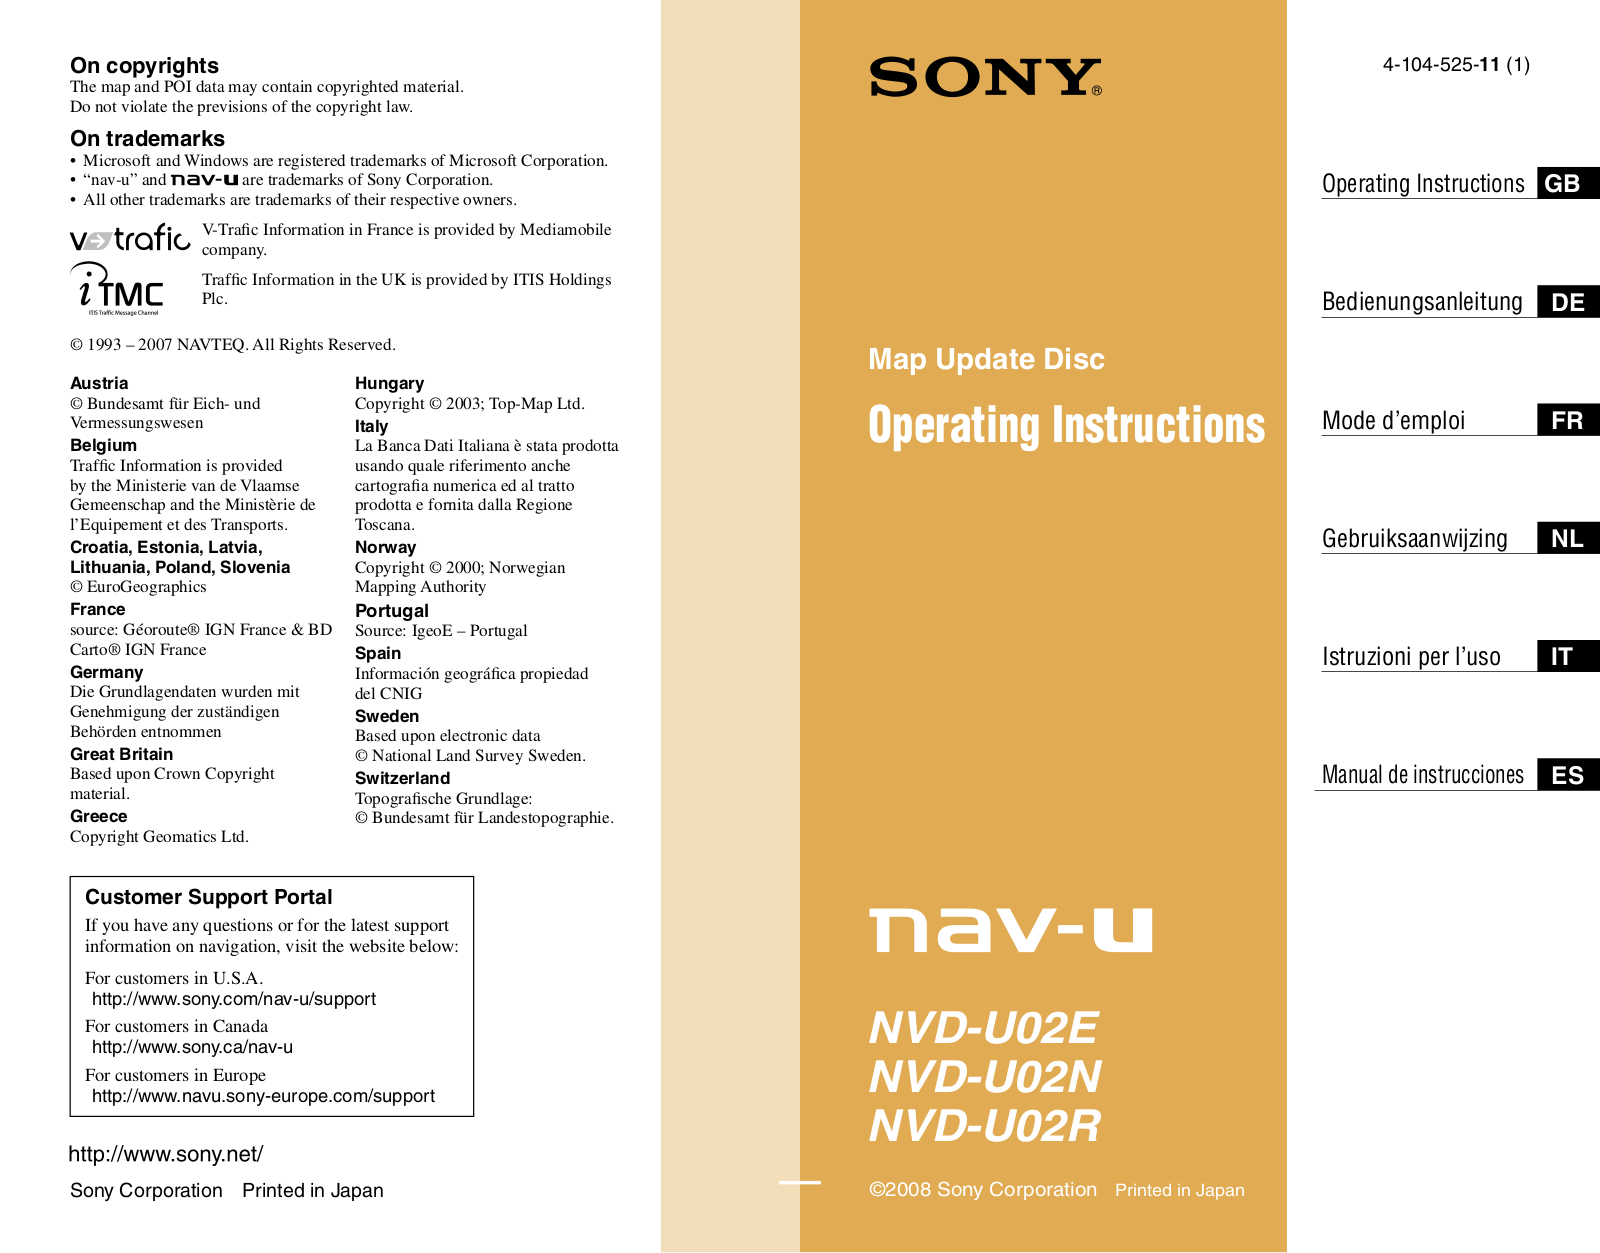 Sony NVD-U02R, NVD-U02N, NVD-U02E Operating manual